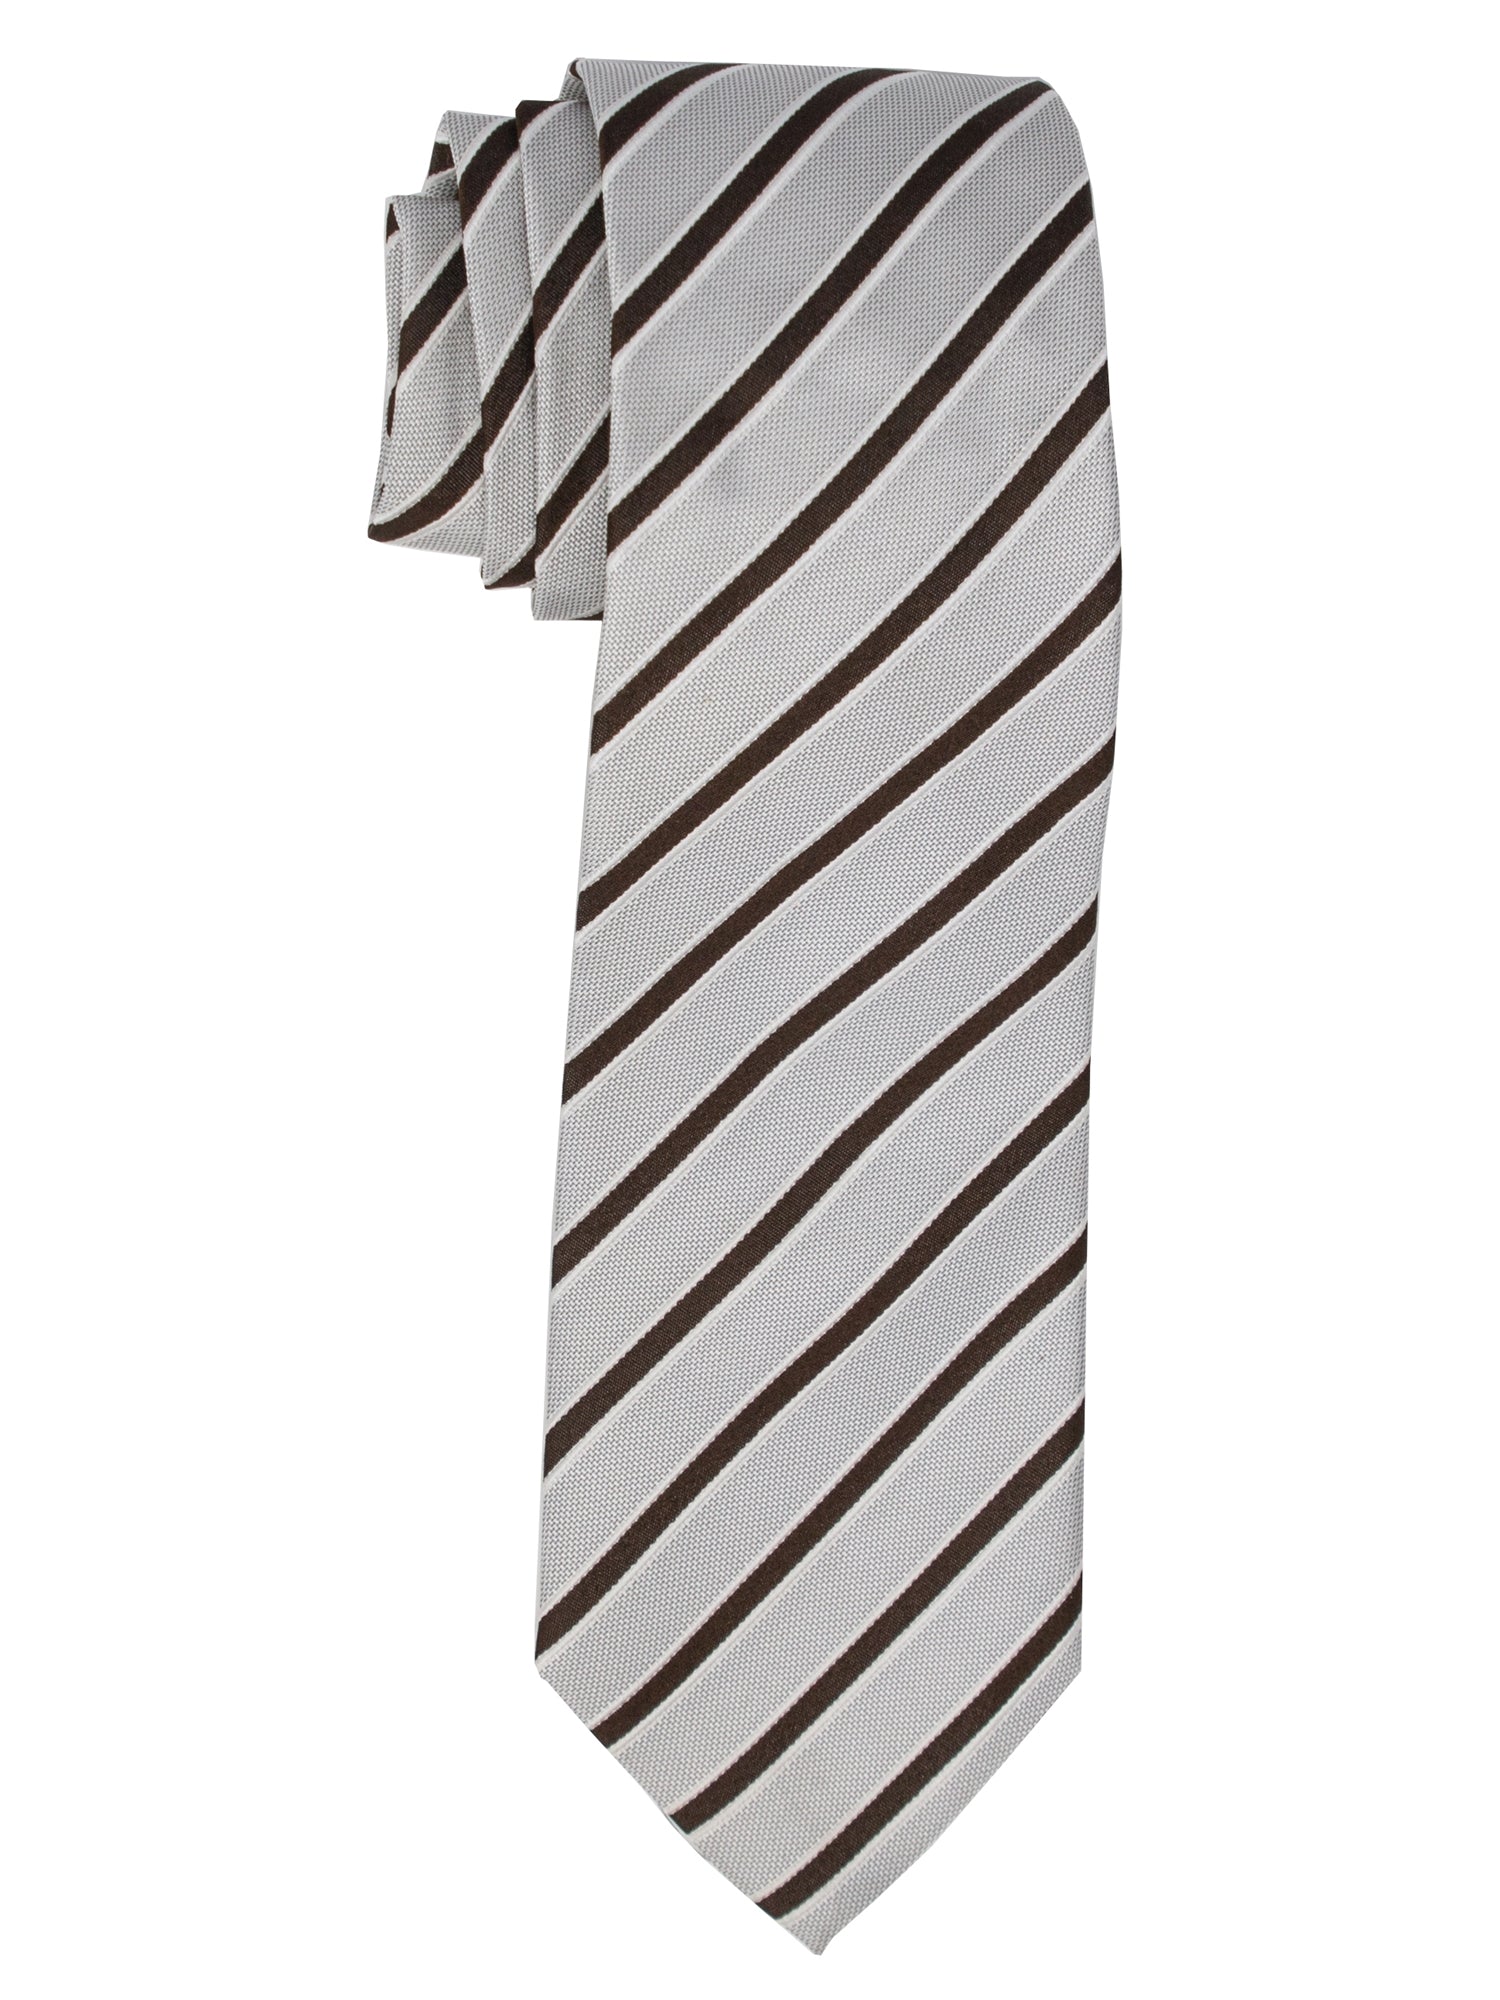 Men's Silk Woven Wedding Neck Tie Collection Neck Tie TheDapperTie White And Dark Brown Stripes Regular 